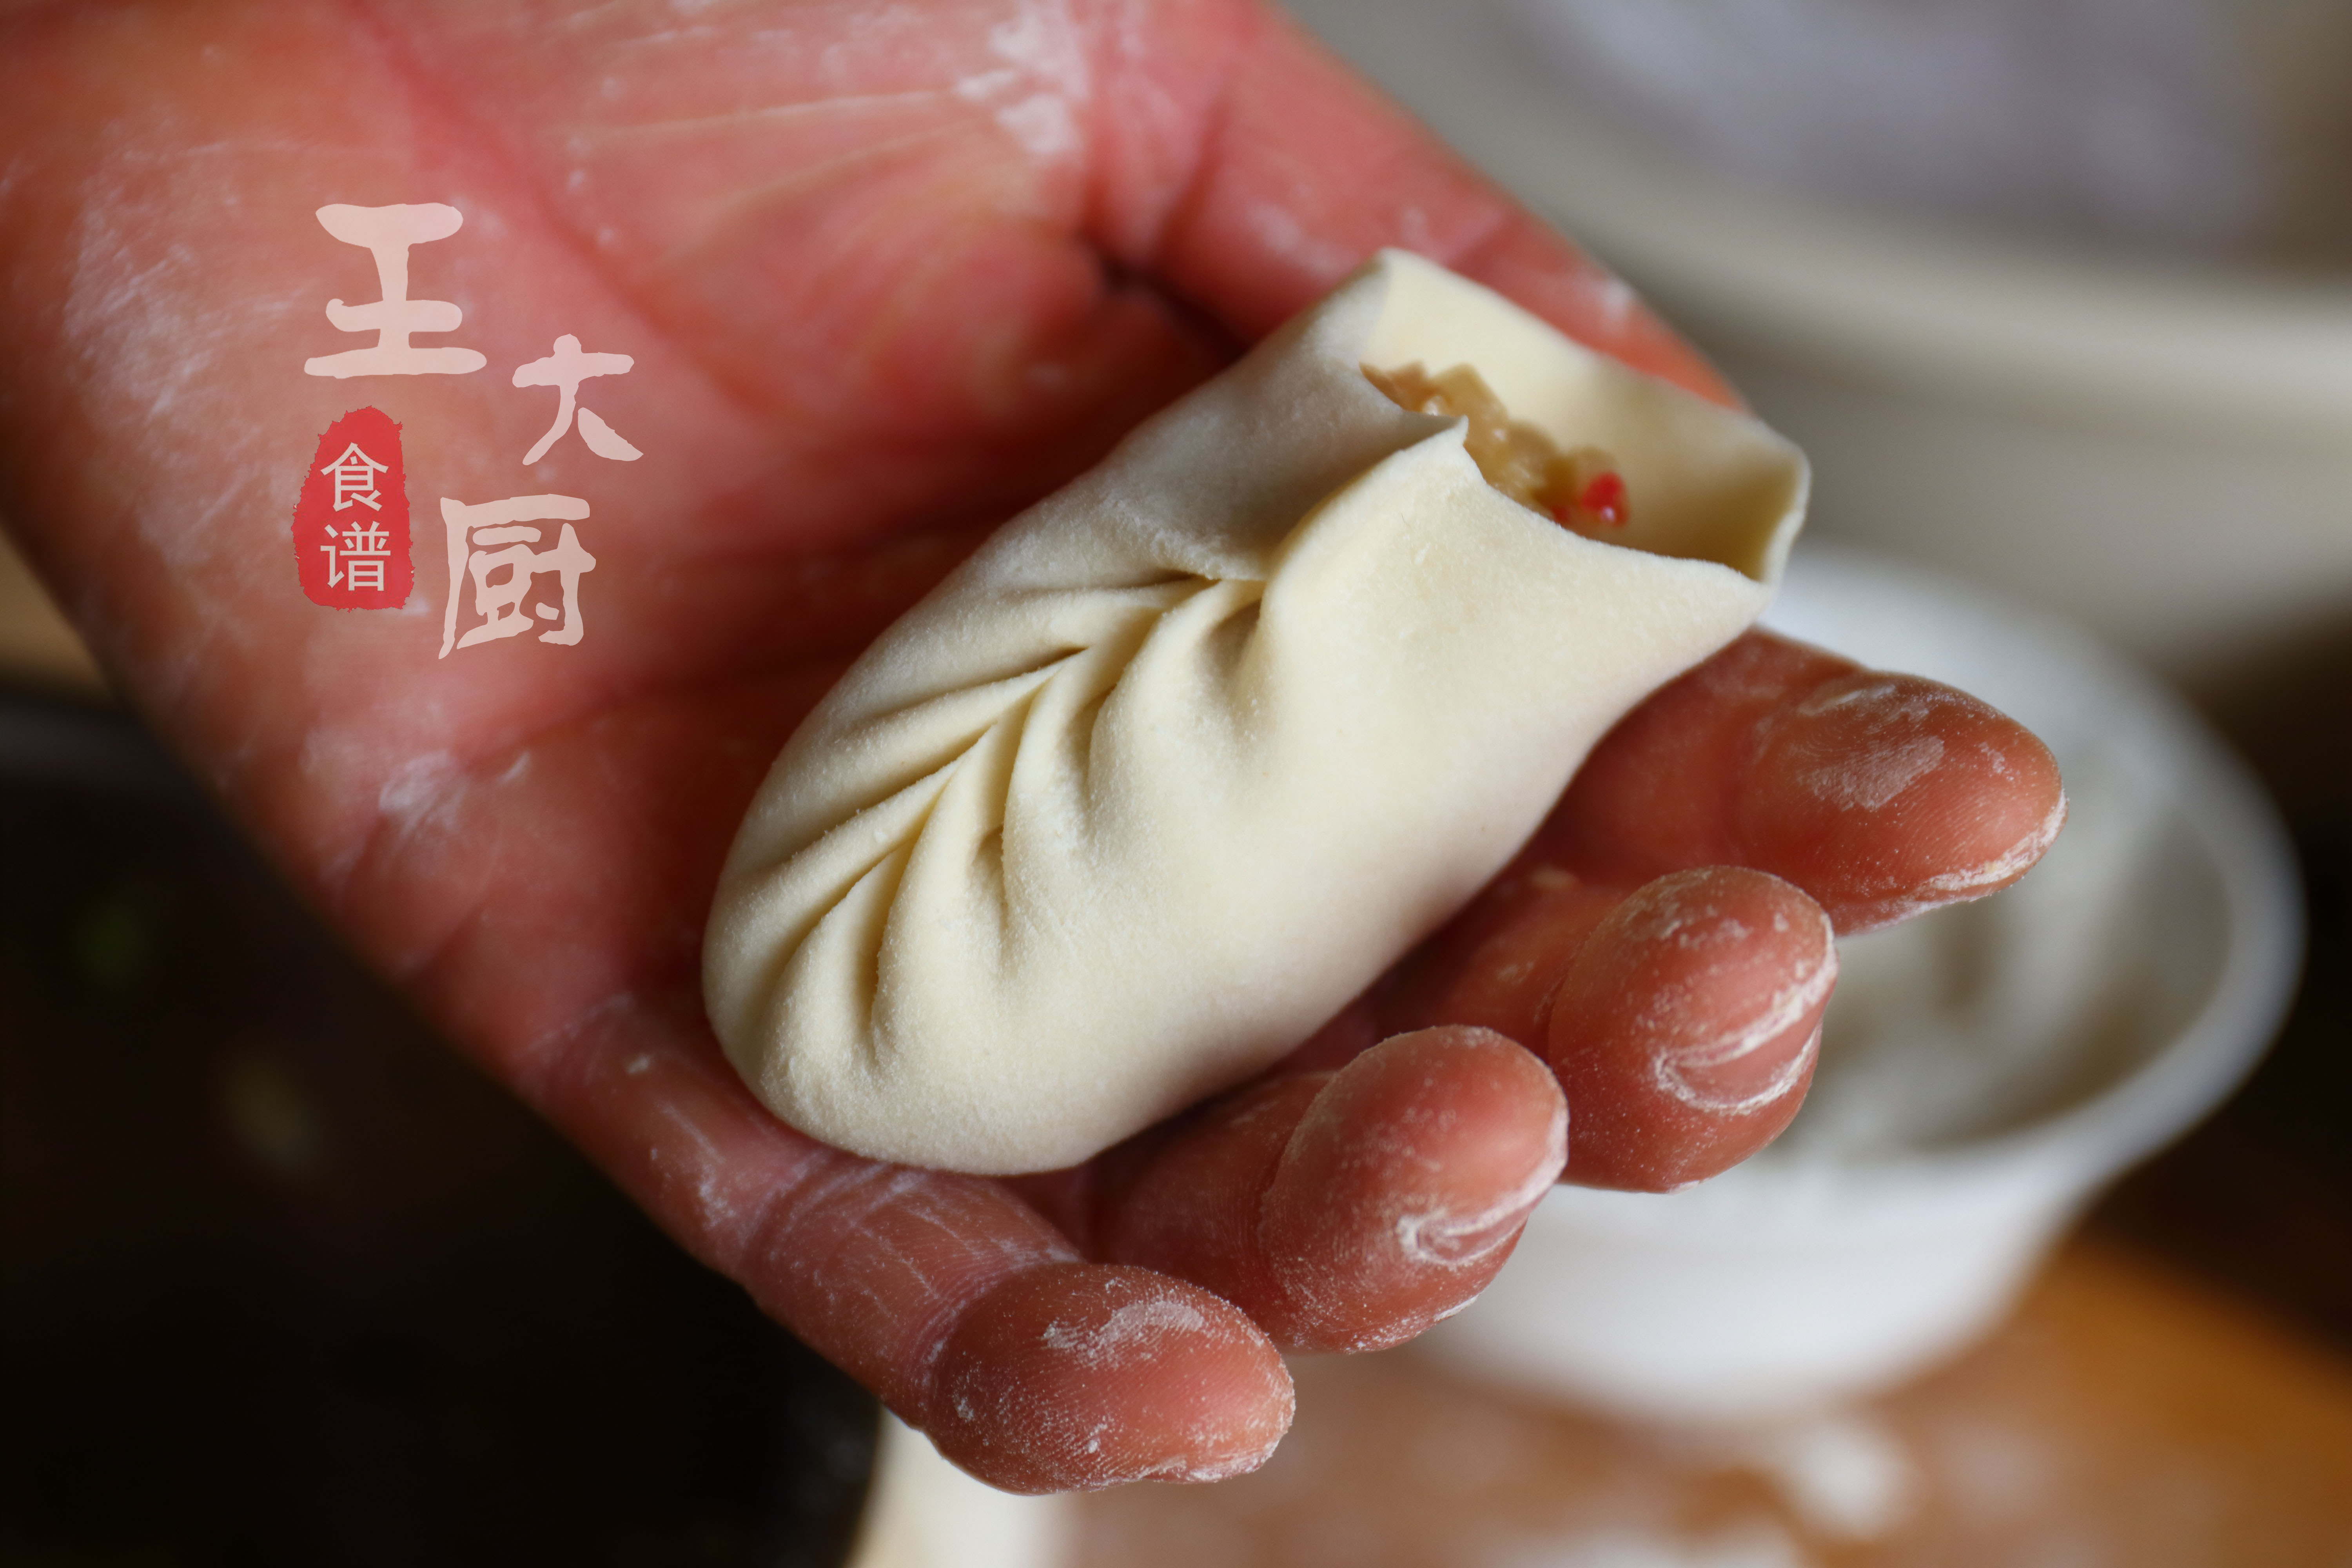 2分钟就能学会柳叶蒸饺的包法技巧，简单易懂，颜值不输沙县蒸饺